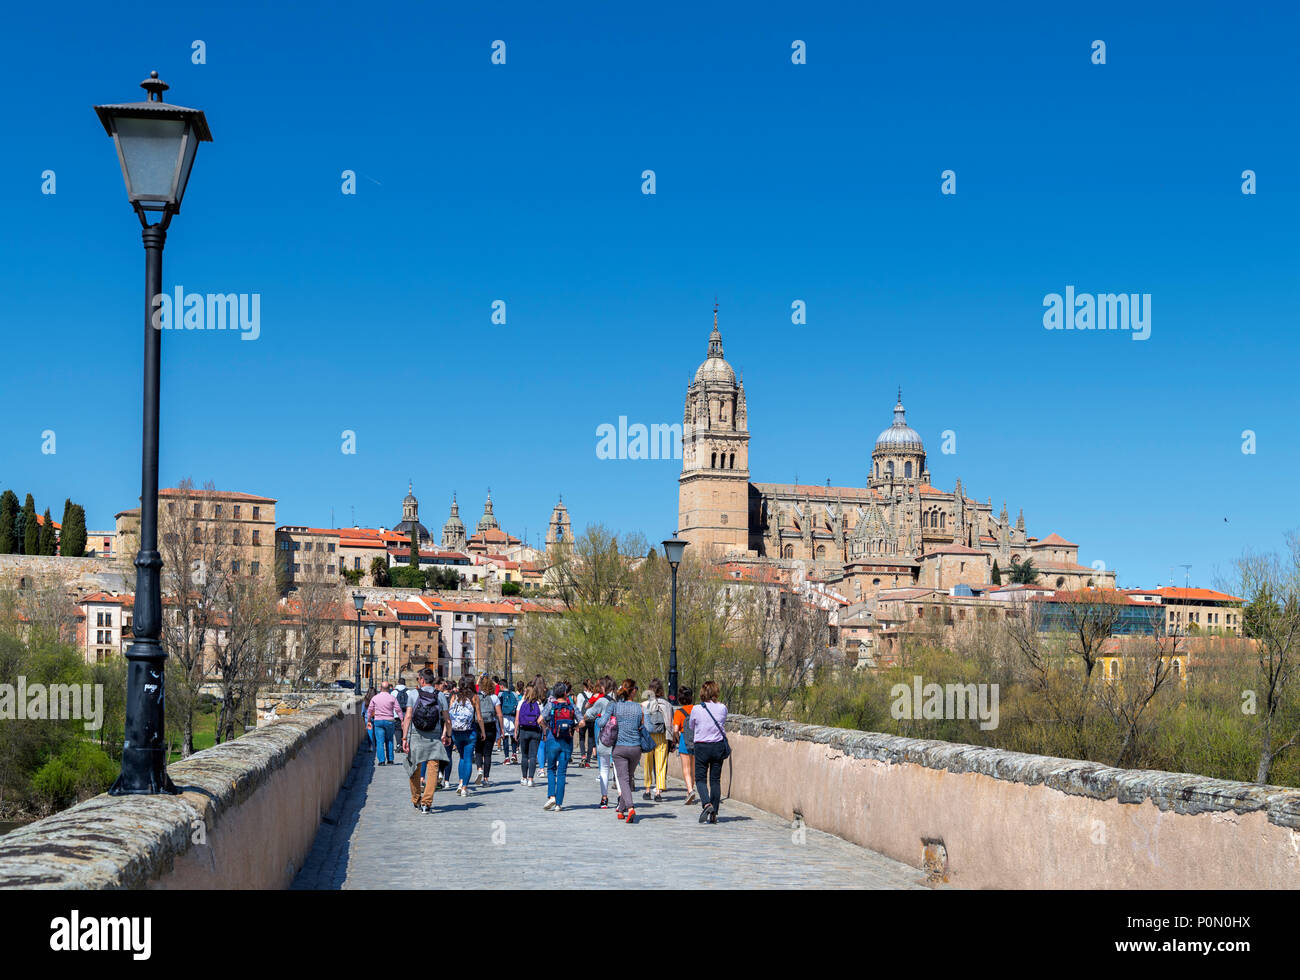 Salamanca, Spanien. Blick auf die Altstadt und Kathedralen von der Puente Romano (Römische Brücke), Salamanca, Castilla y Leon, Spanien Stockfoto